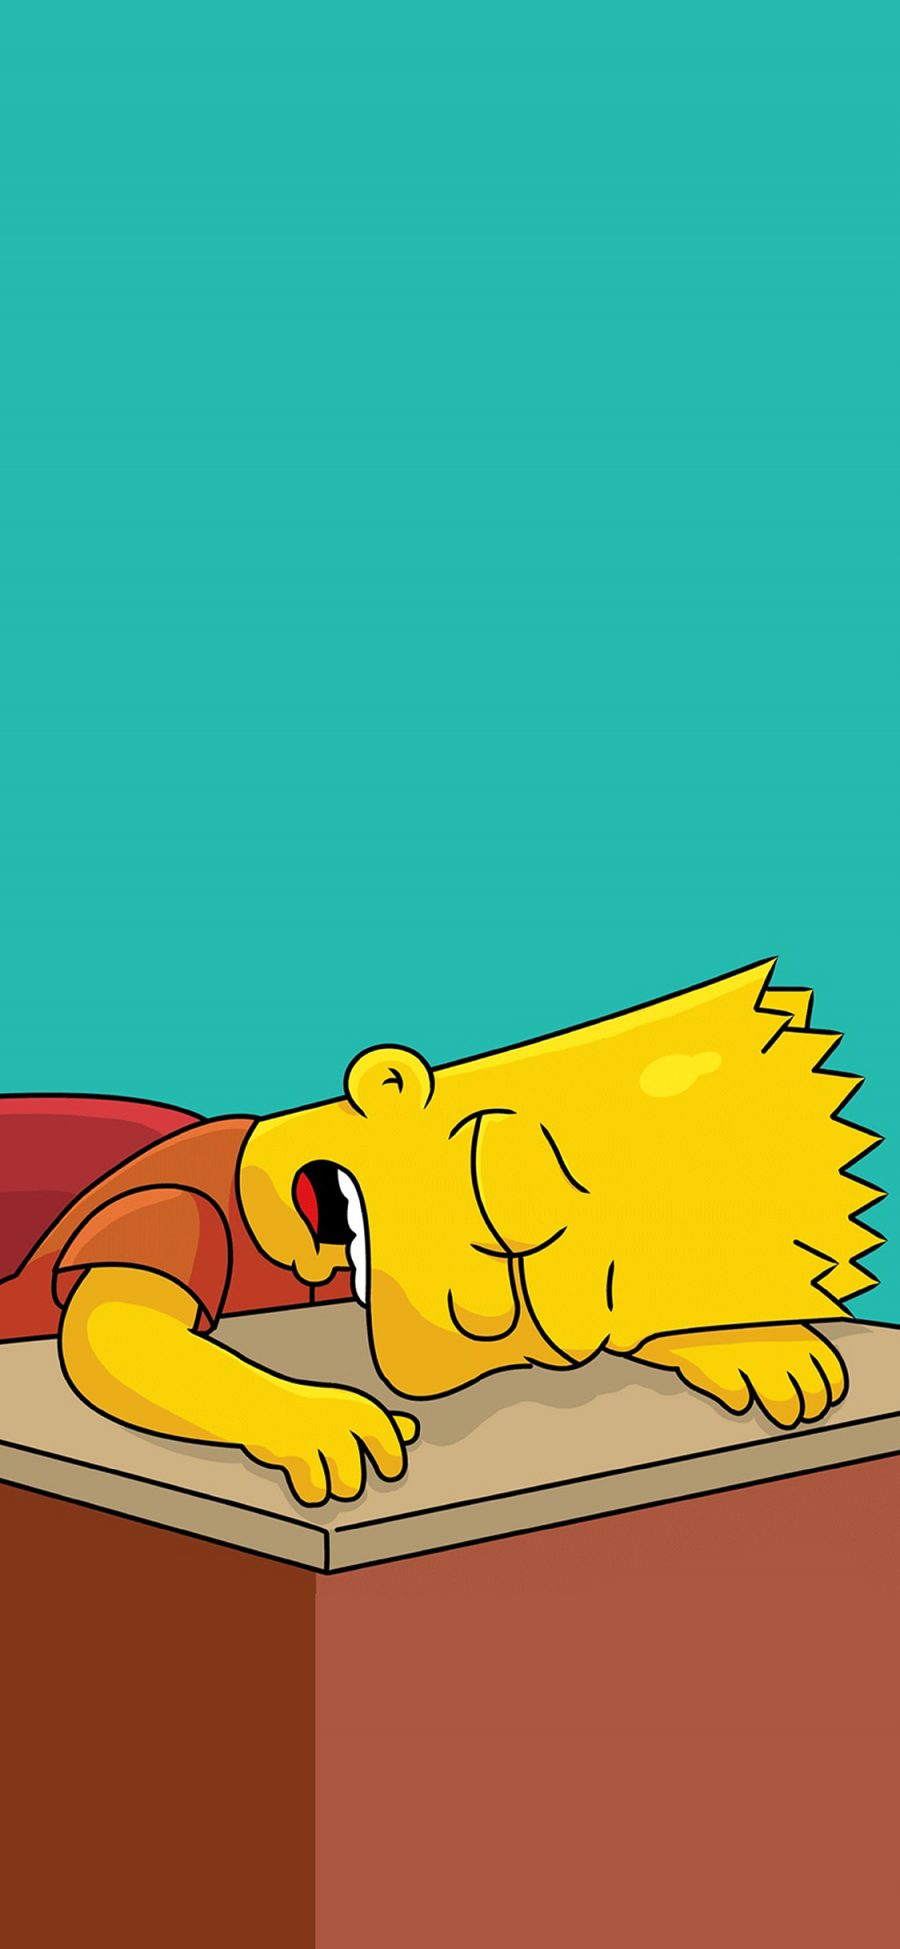 [2436×1125]辛普森一家 欧美 动画 睡觉 困 苹果手机动漫壁纸图片